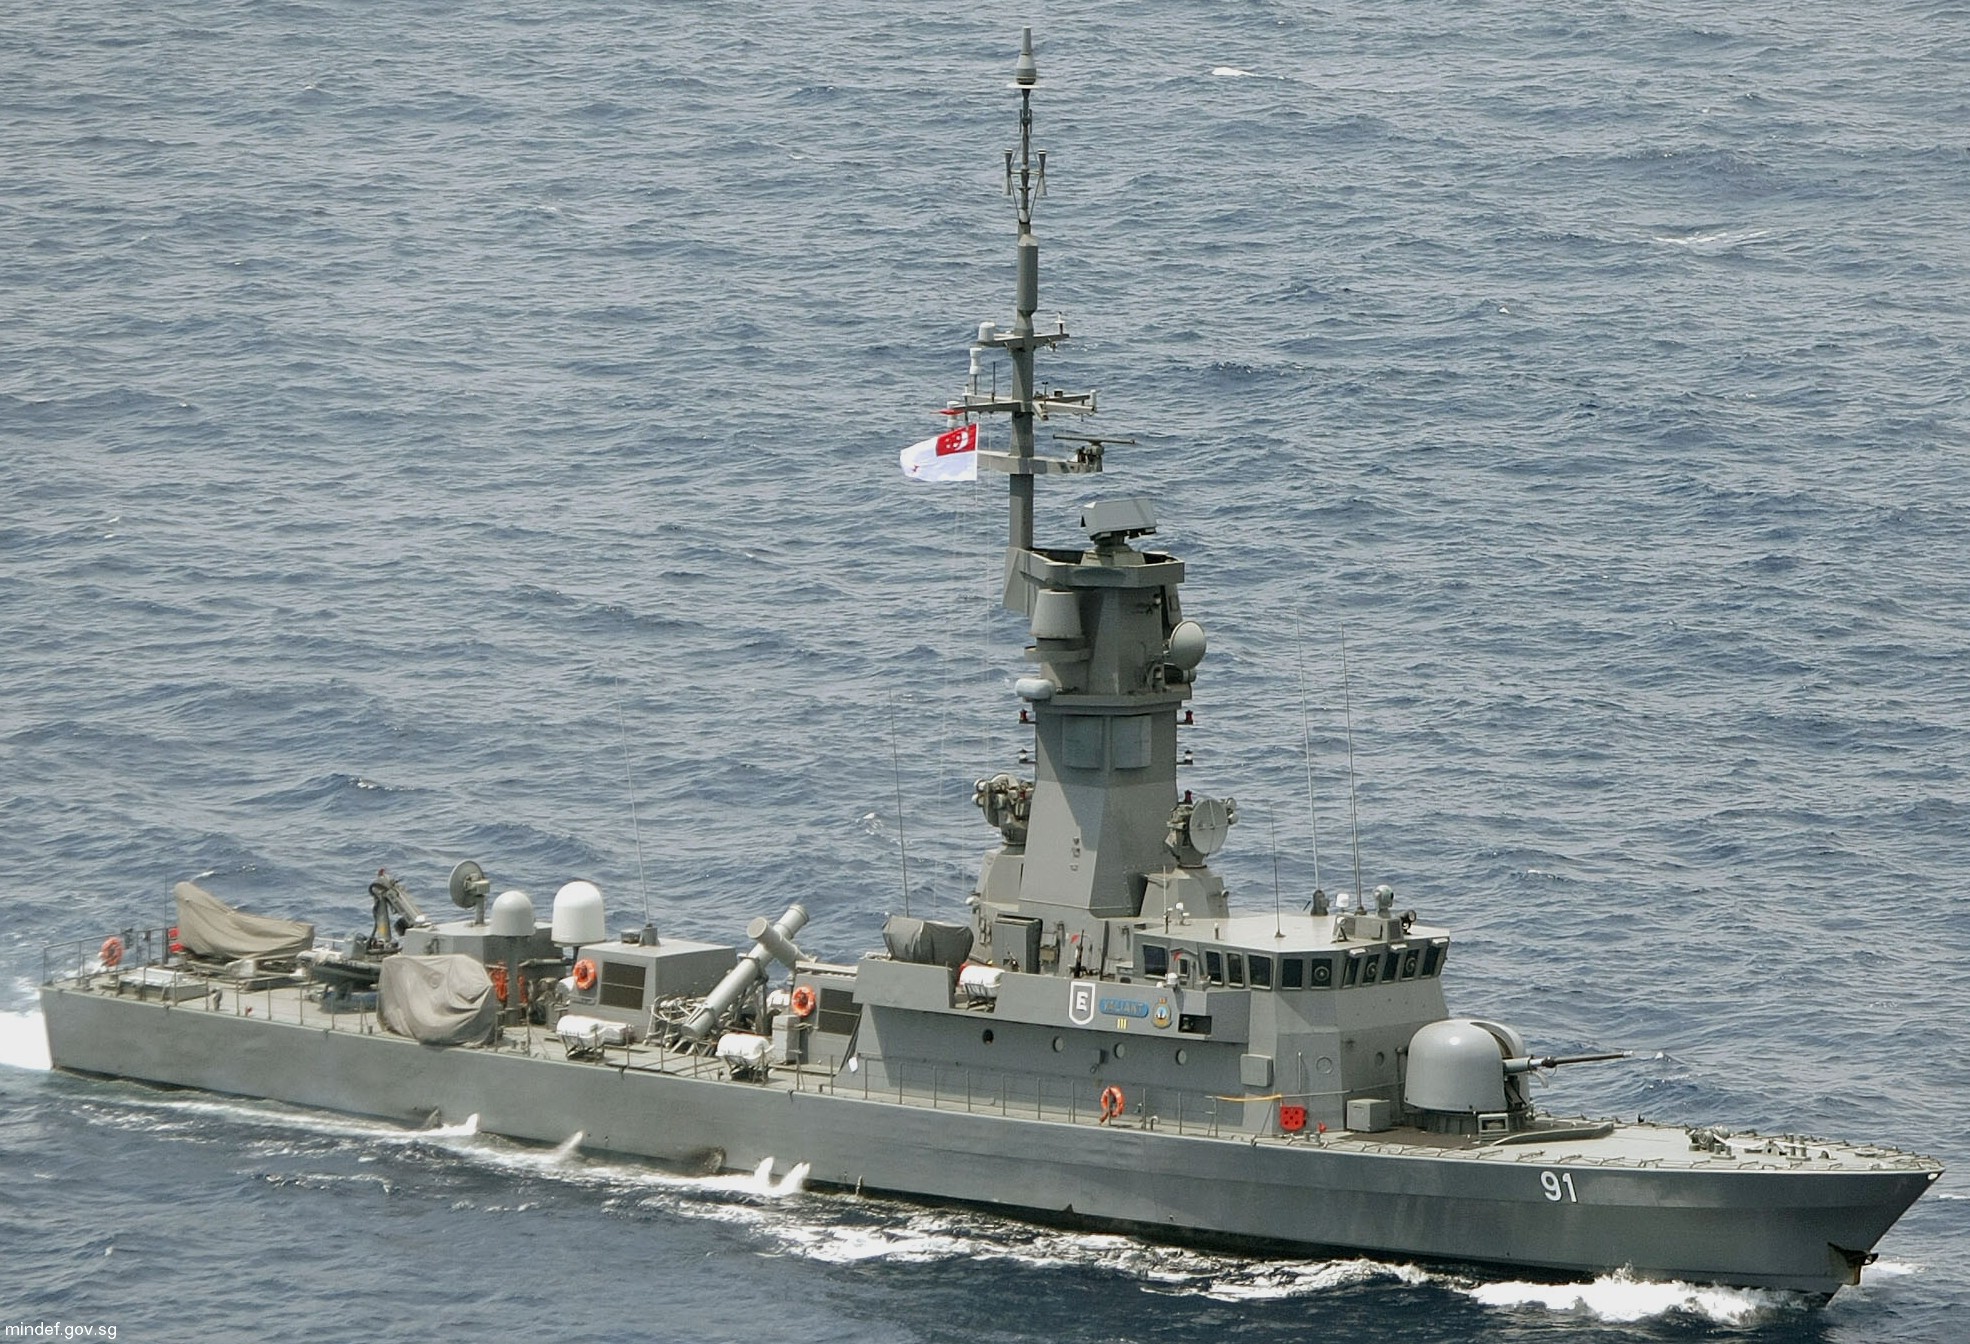 91 rss valiant victory class missile corvette republic singapore navy 09